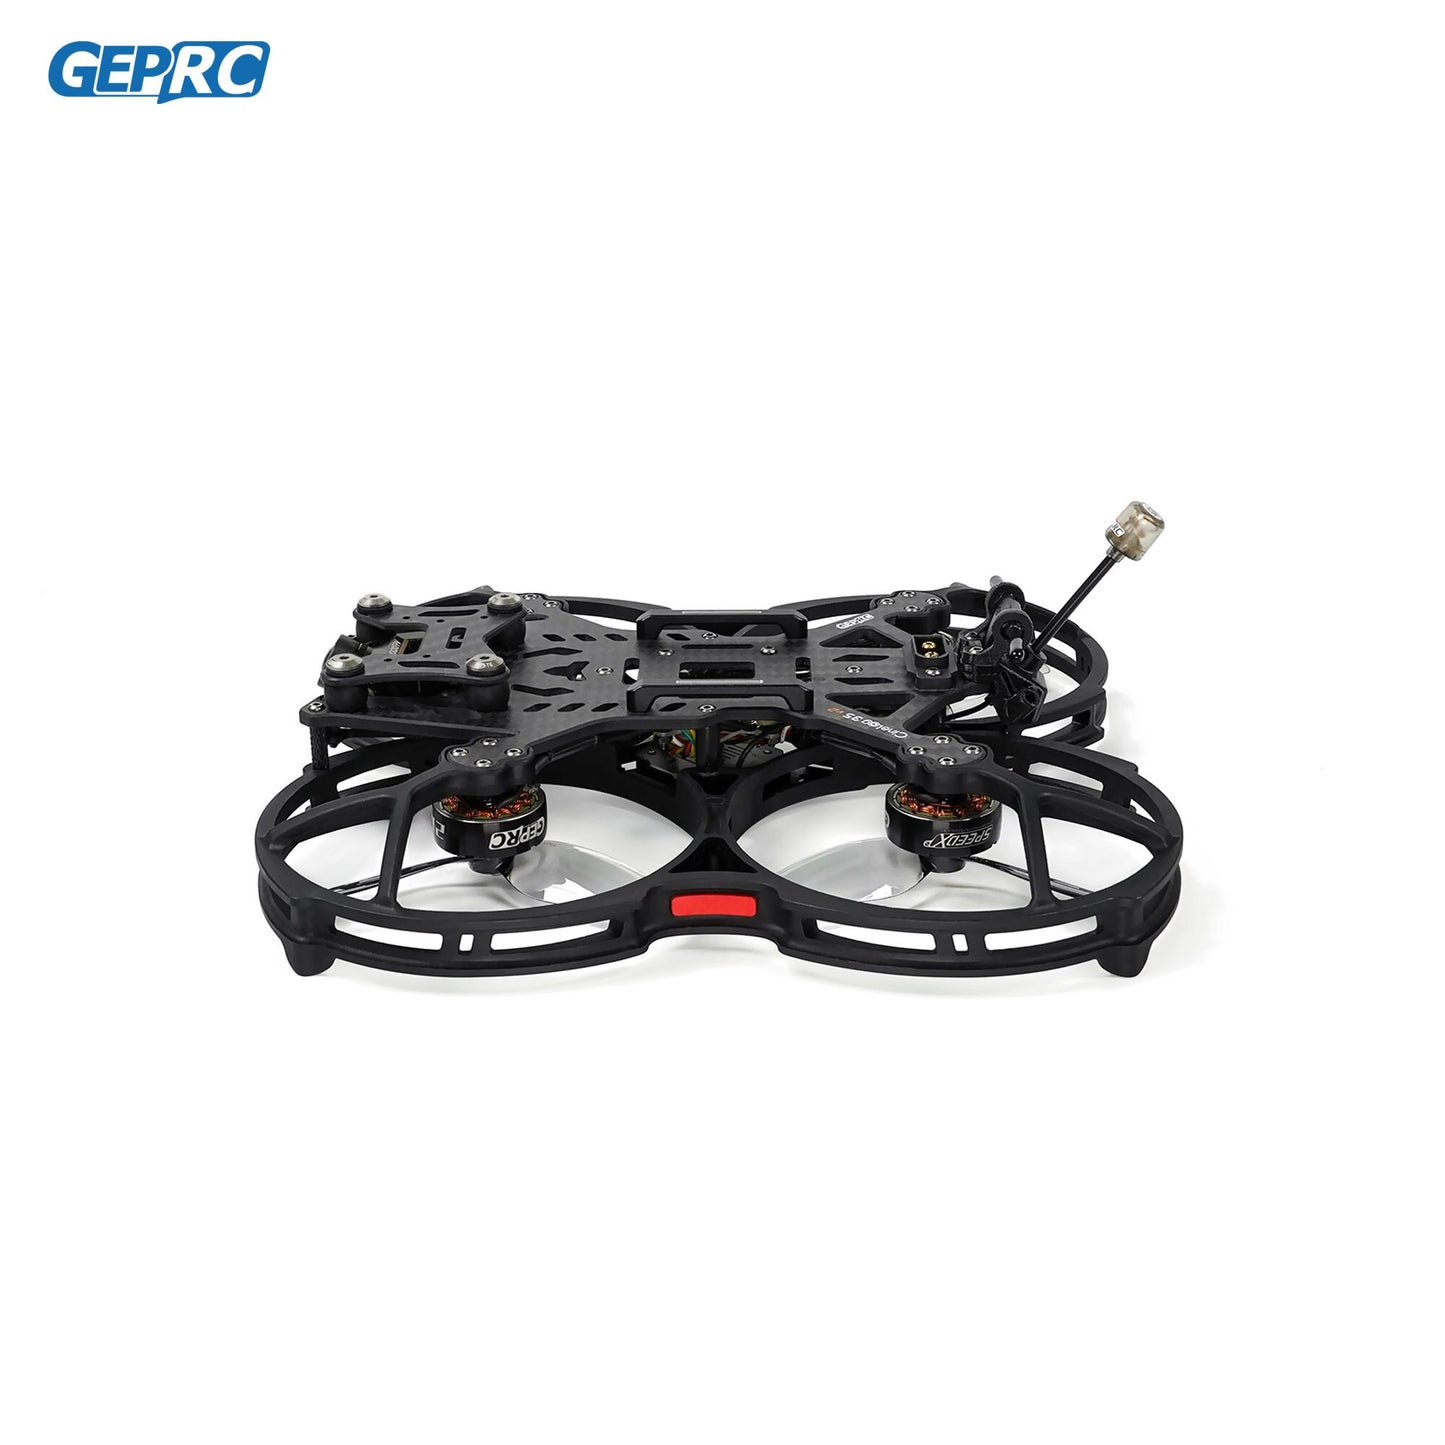 GEPRC Cinelog35 V2 Analog FPV Drone - System 2650KV VTX SPEEDX2 ICM 42688-P F722-45A AIO V2 RC Quadcopter Freestyle Drone